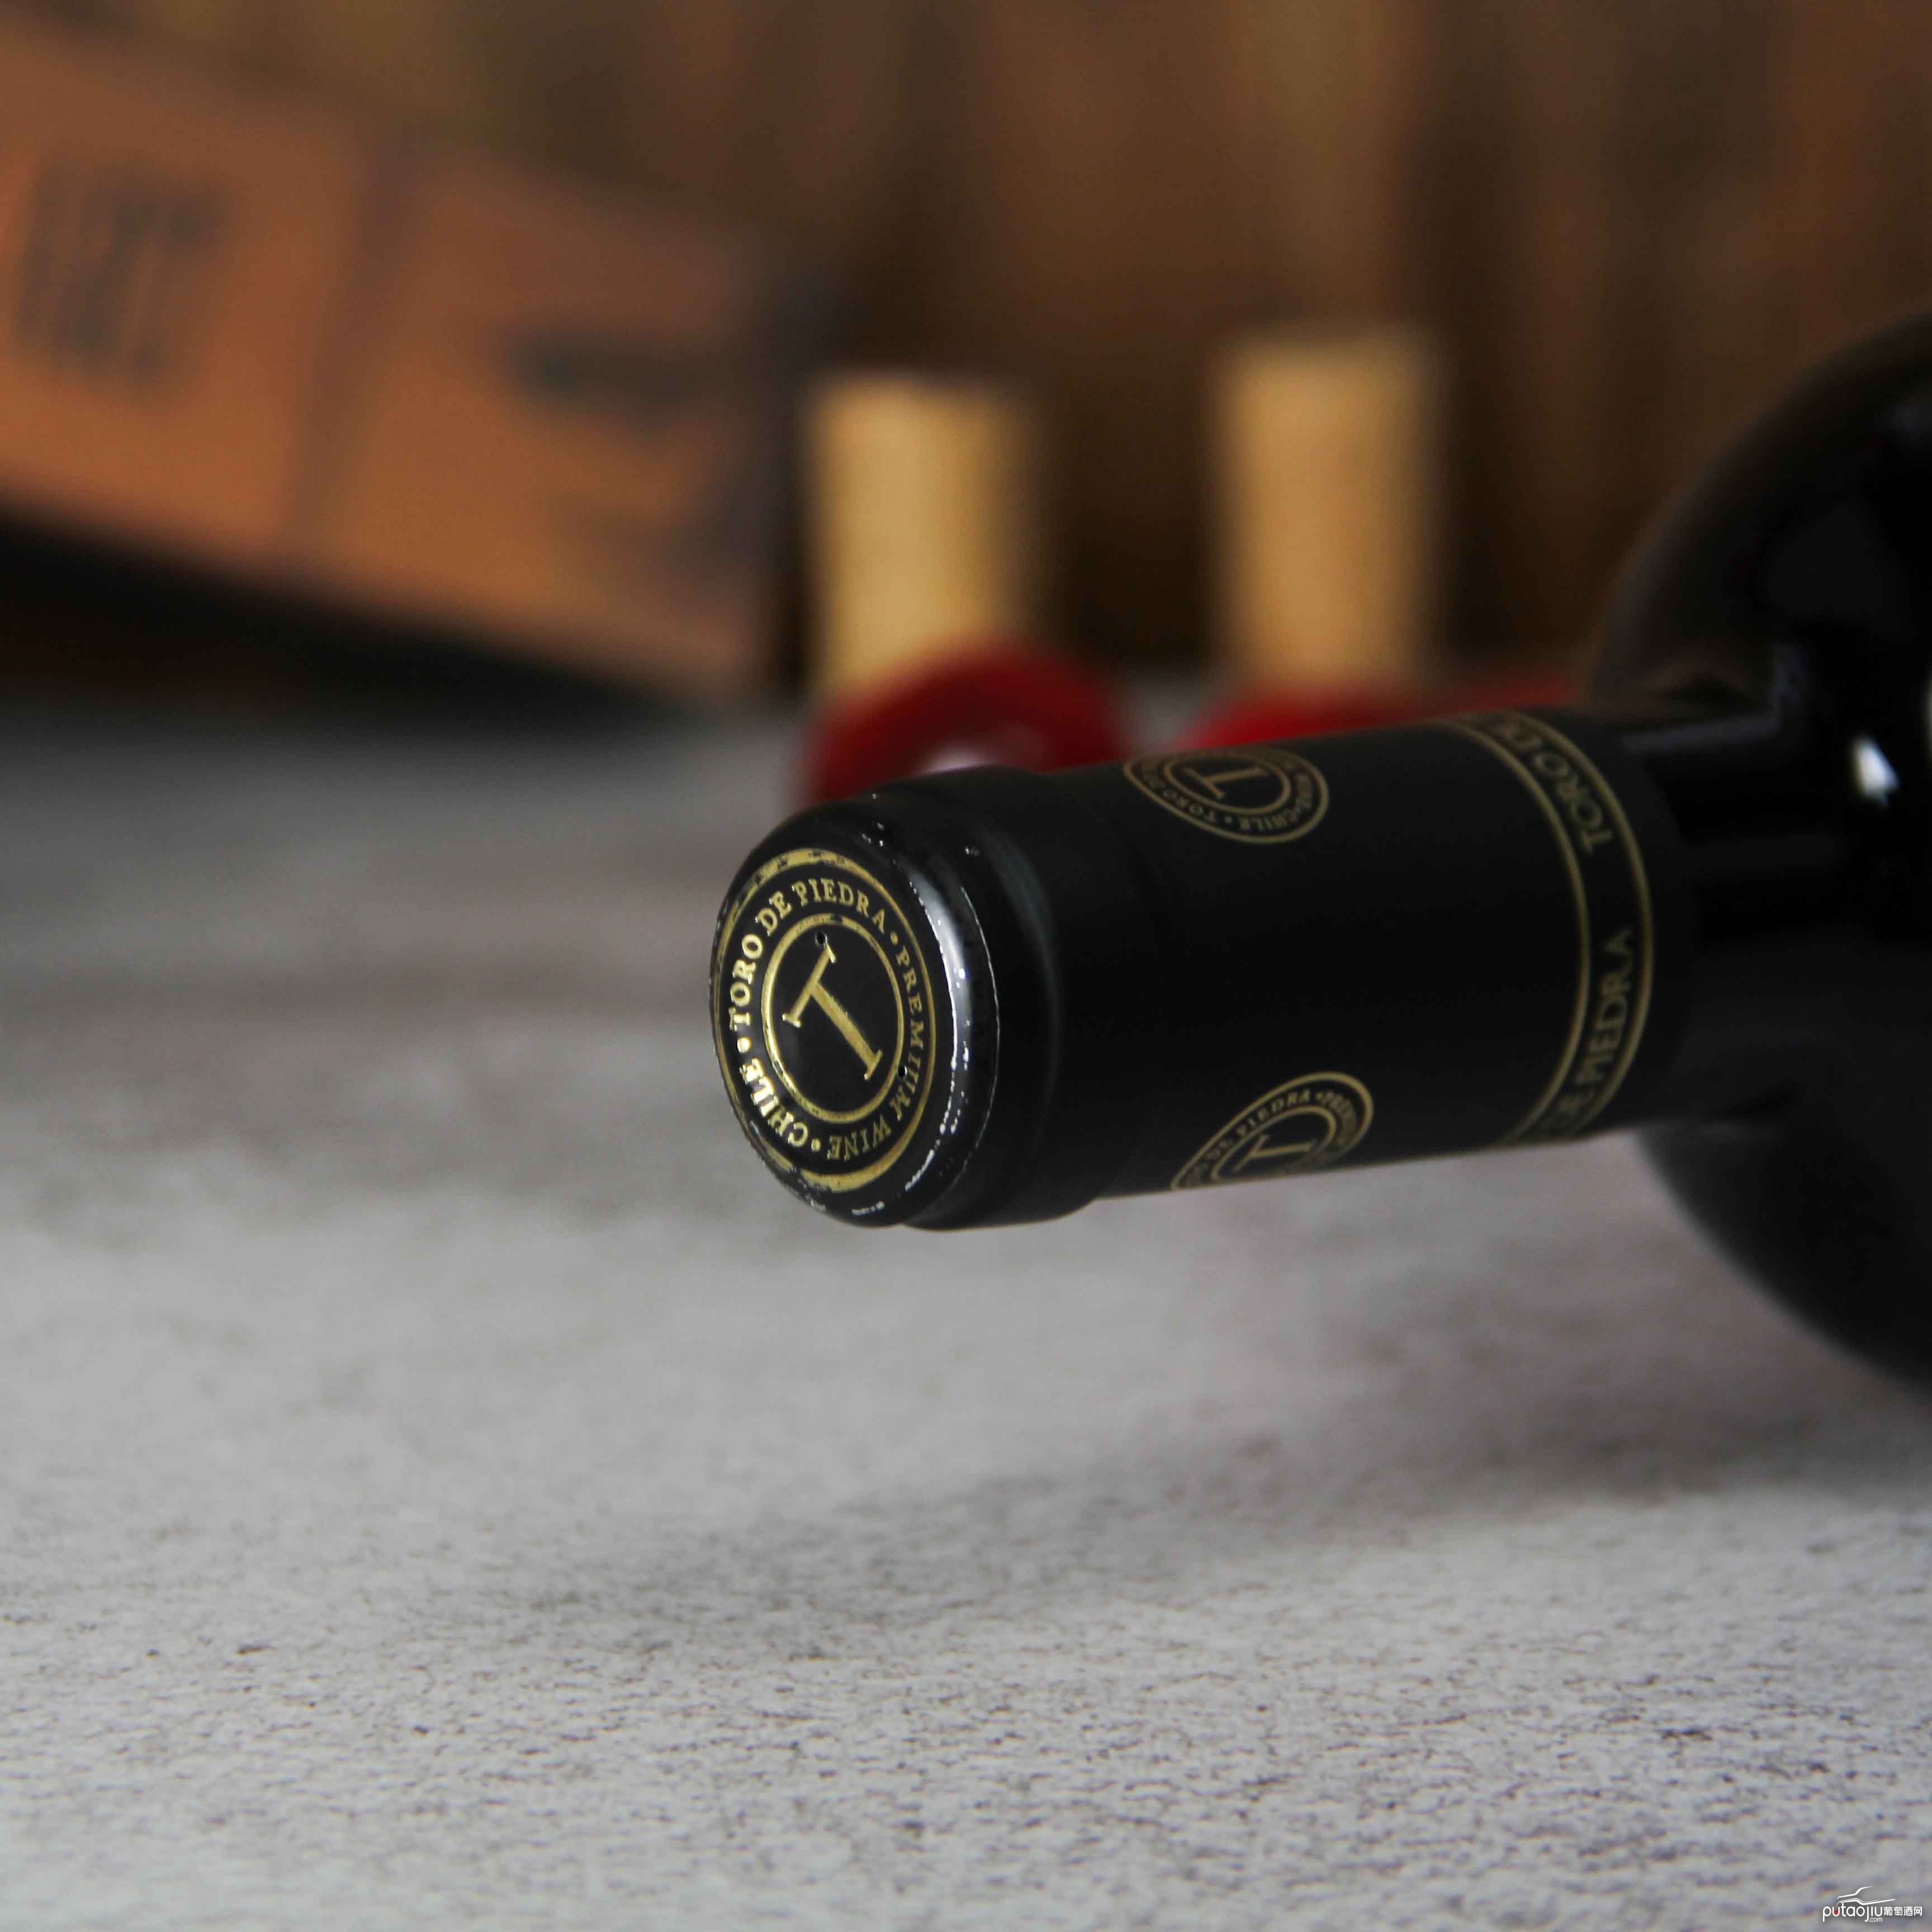 智利巨石牛单一葡萄园赤霞珠干红葡萄酒红酒